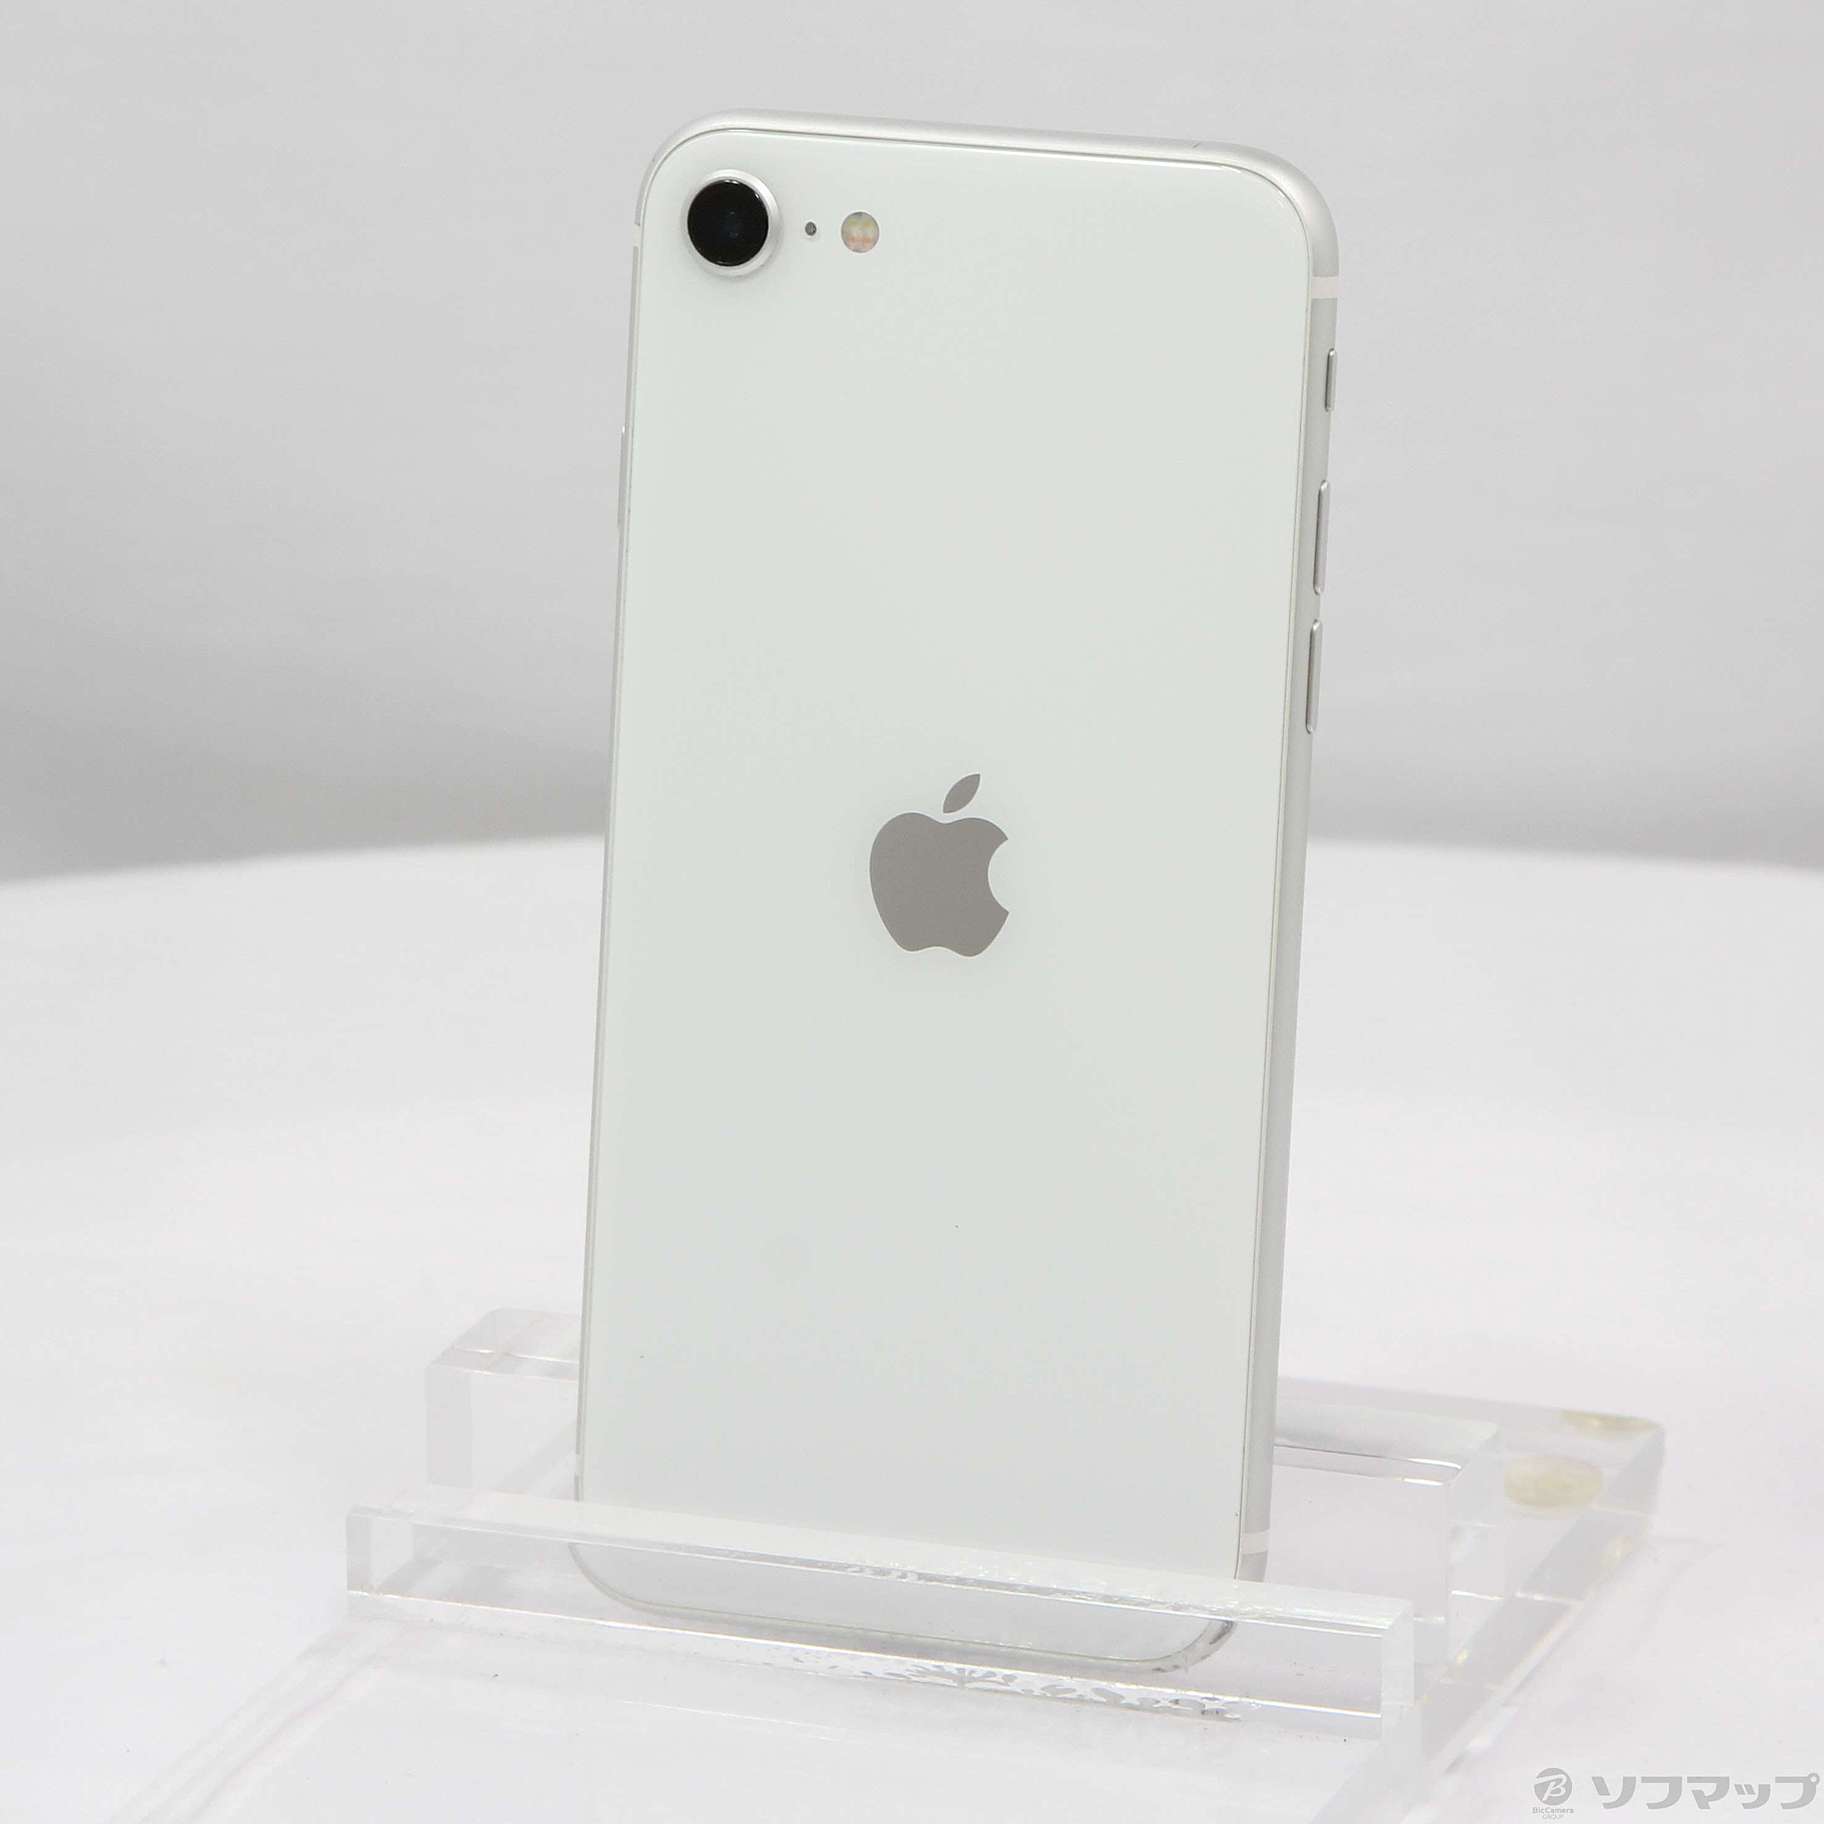 アップル iPhoneSE 第2世代 128GB ホワイト - www.sorbillomenu.com